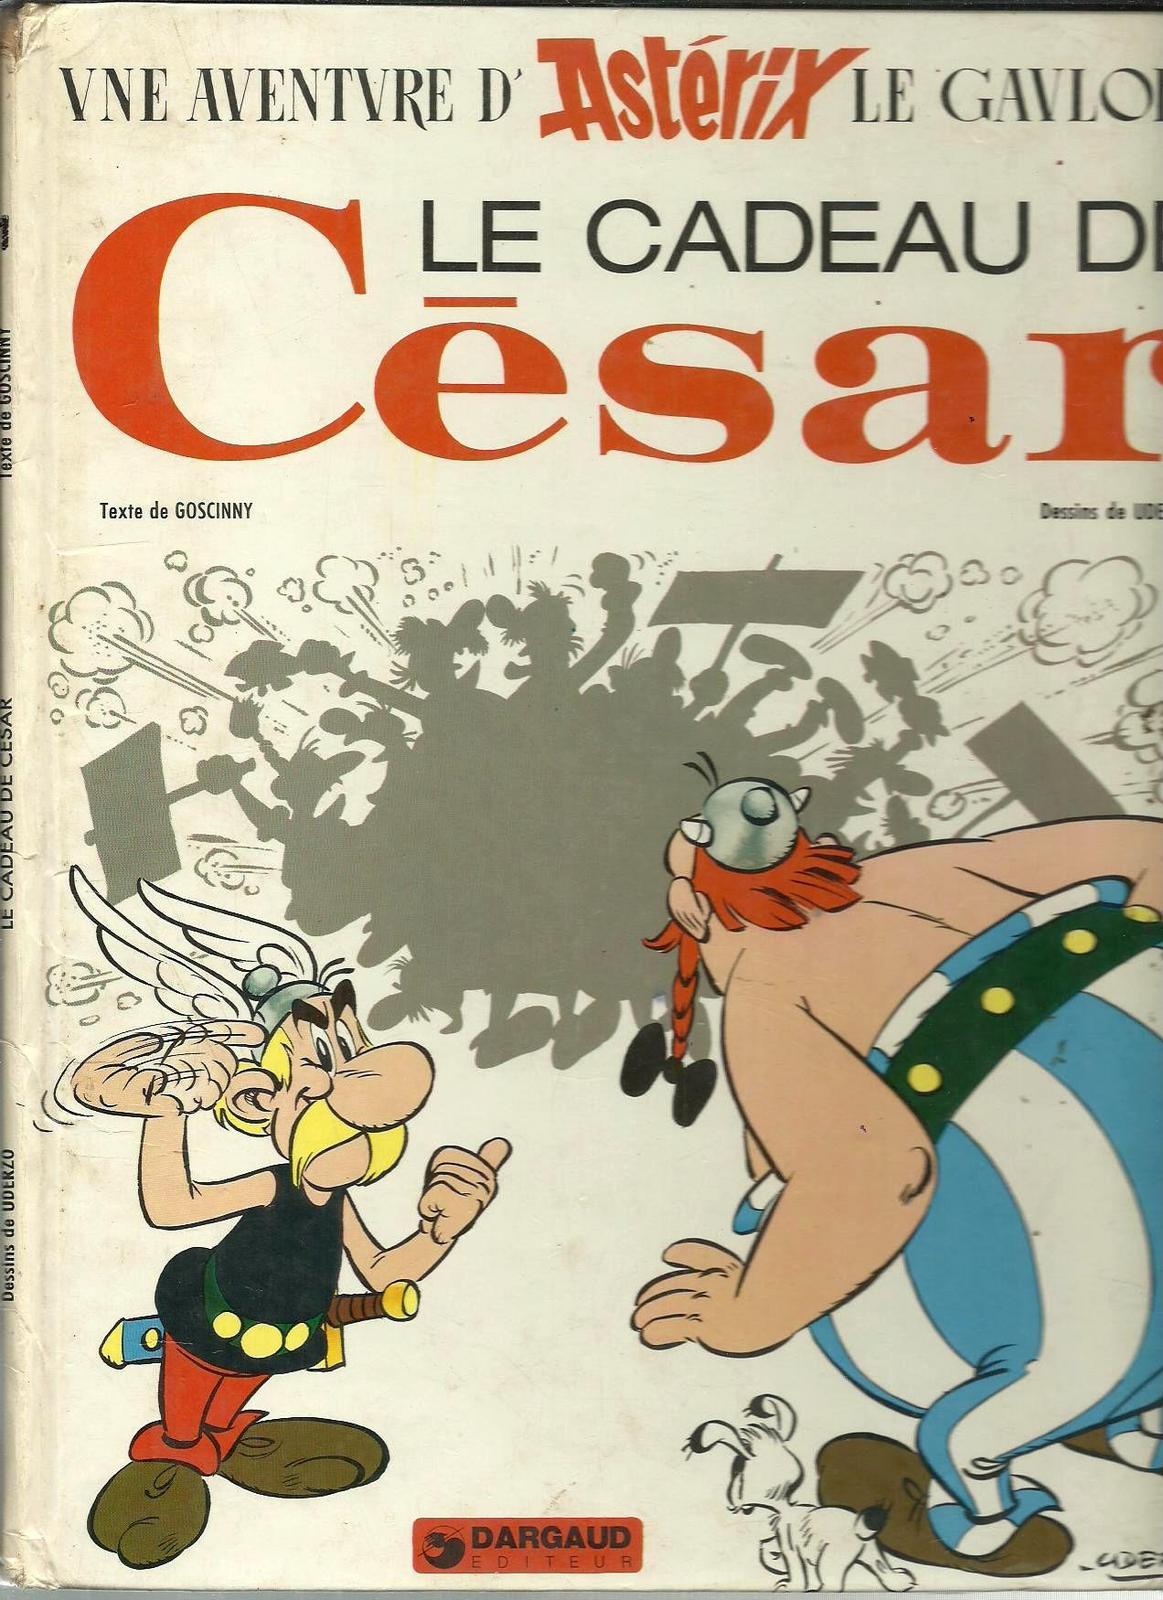 René Goscinny, Albert Uderzo: Le Cadeau de César (French language, 1974, Dargaud)